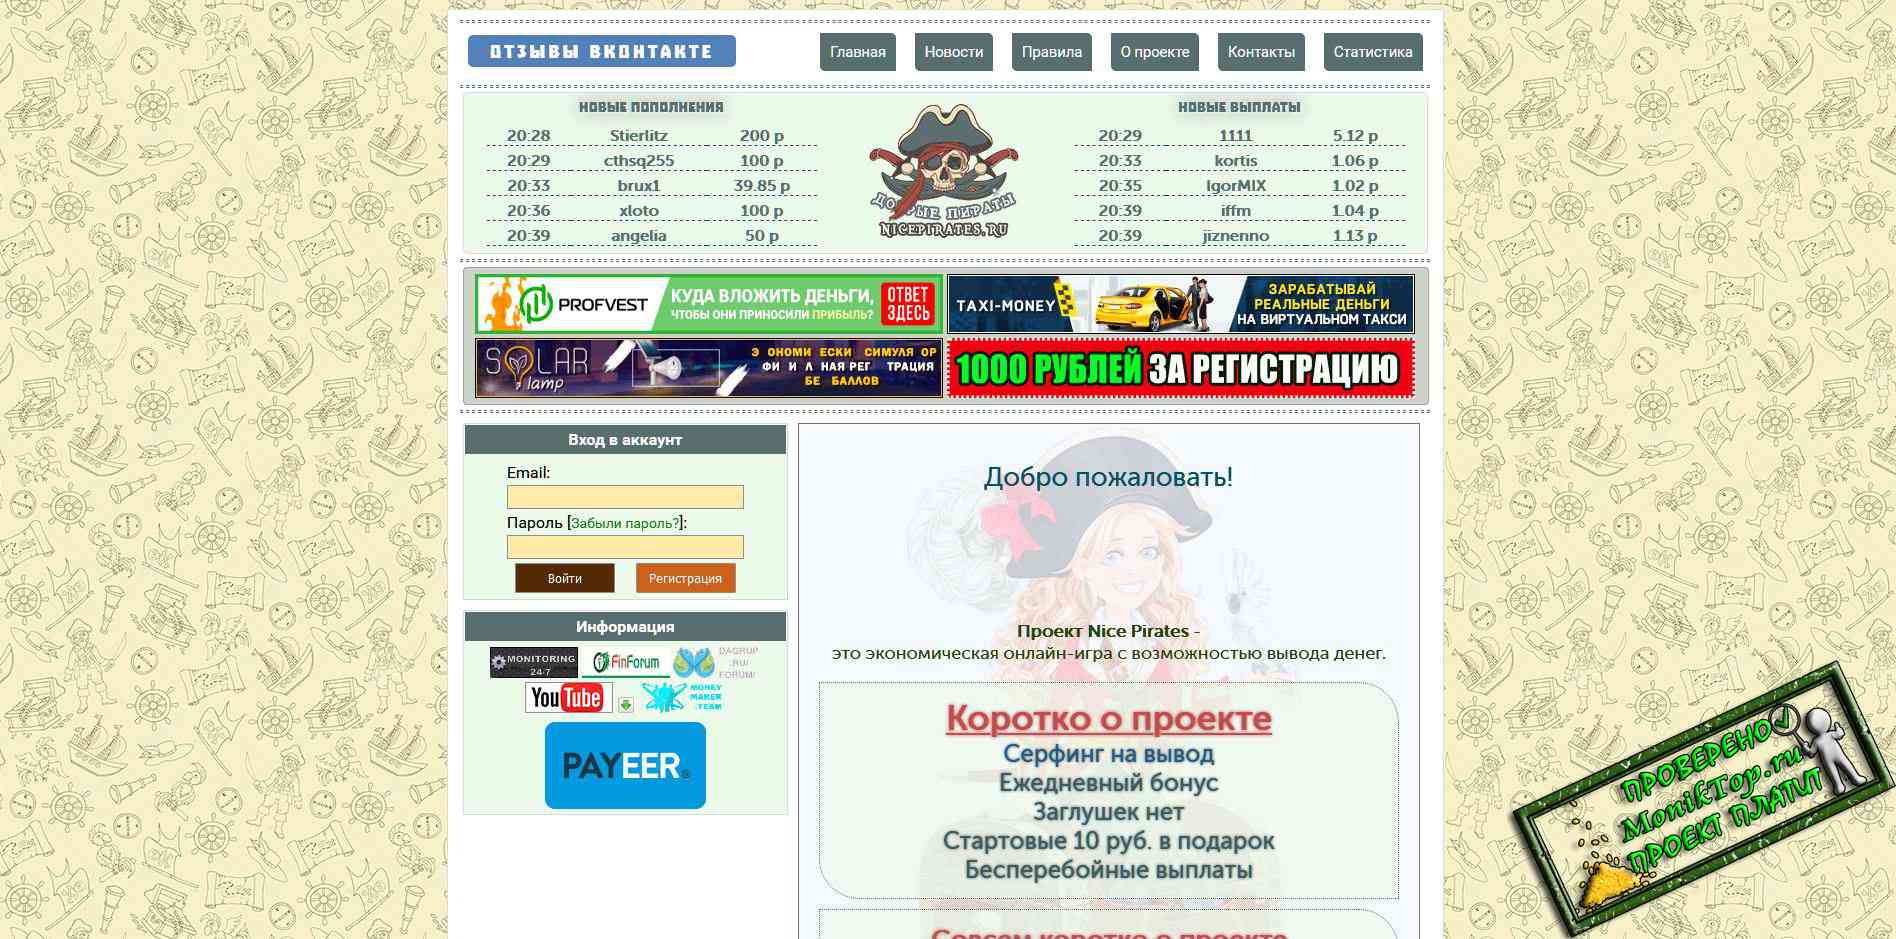 Заработок в телеграмме на русском без вложений с выводом денег карту сбербанка фото 82